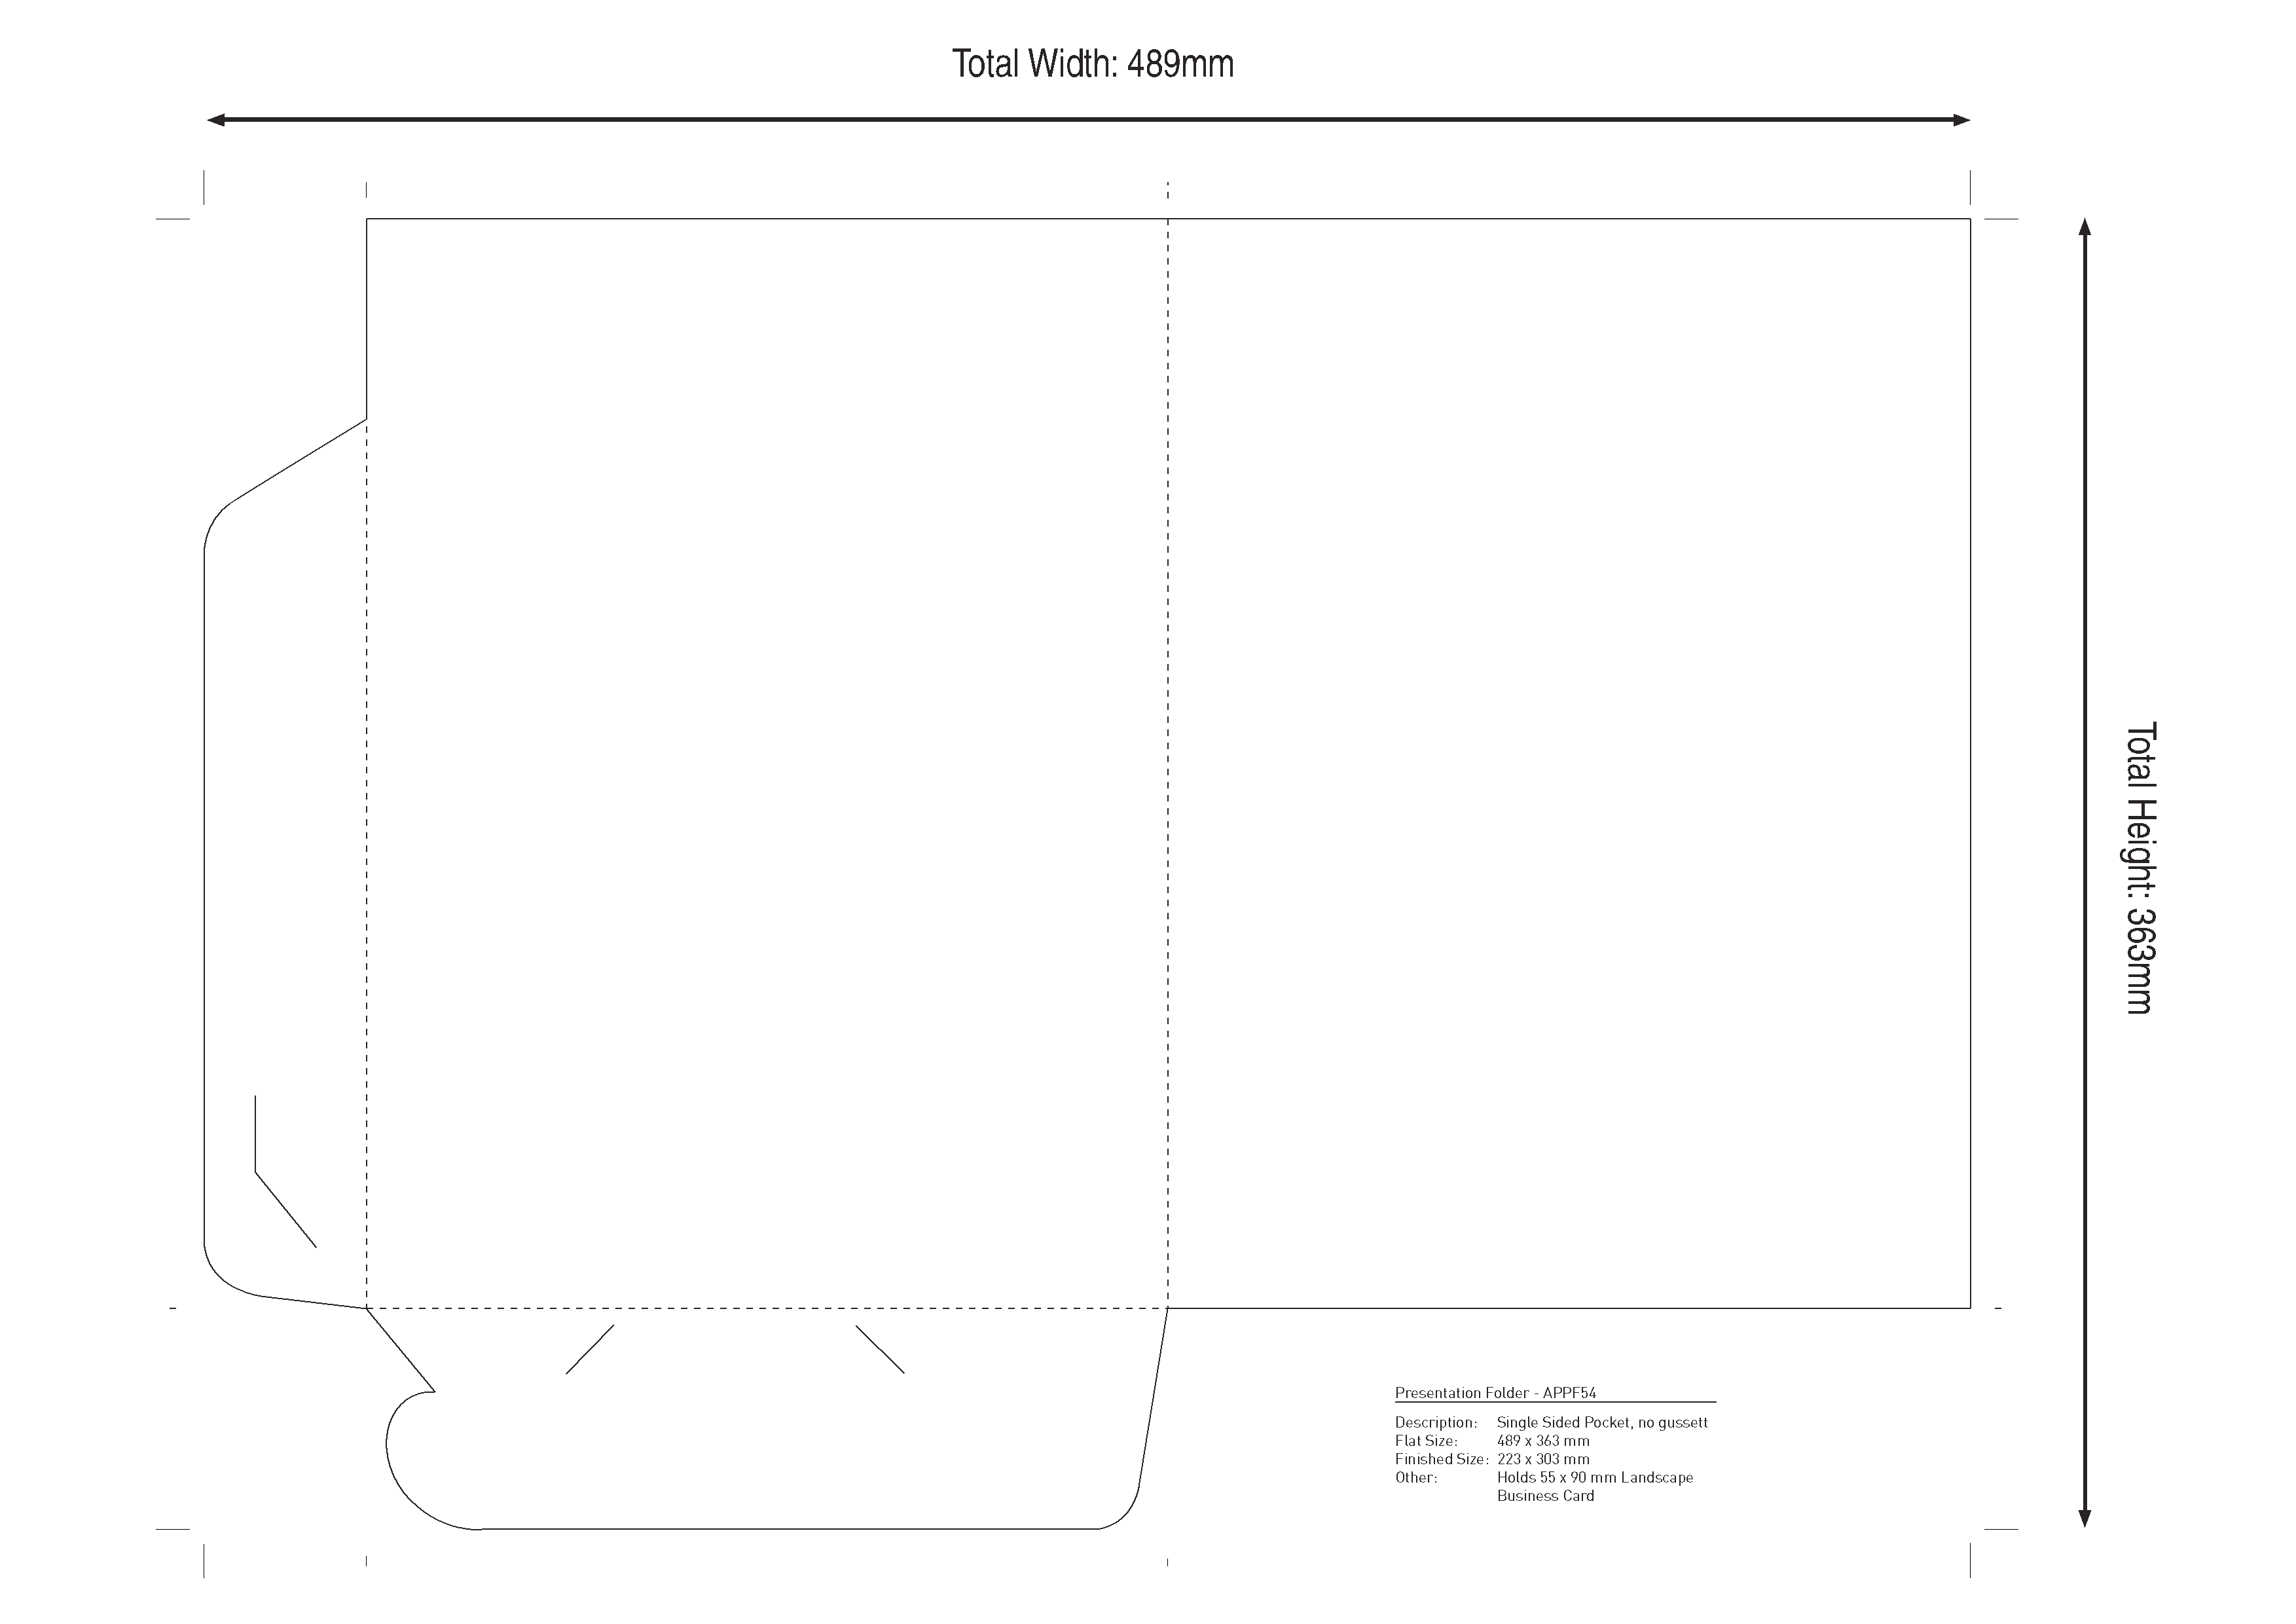 Presentation Folder: no gusset landscape business card